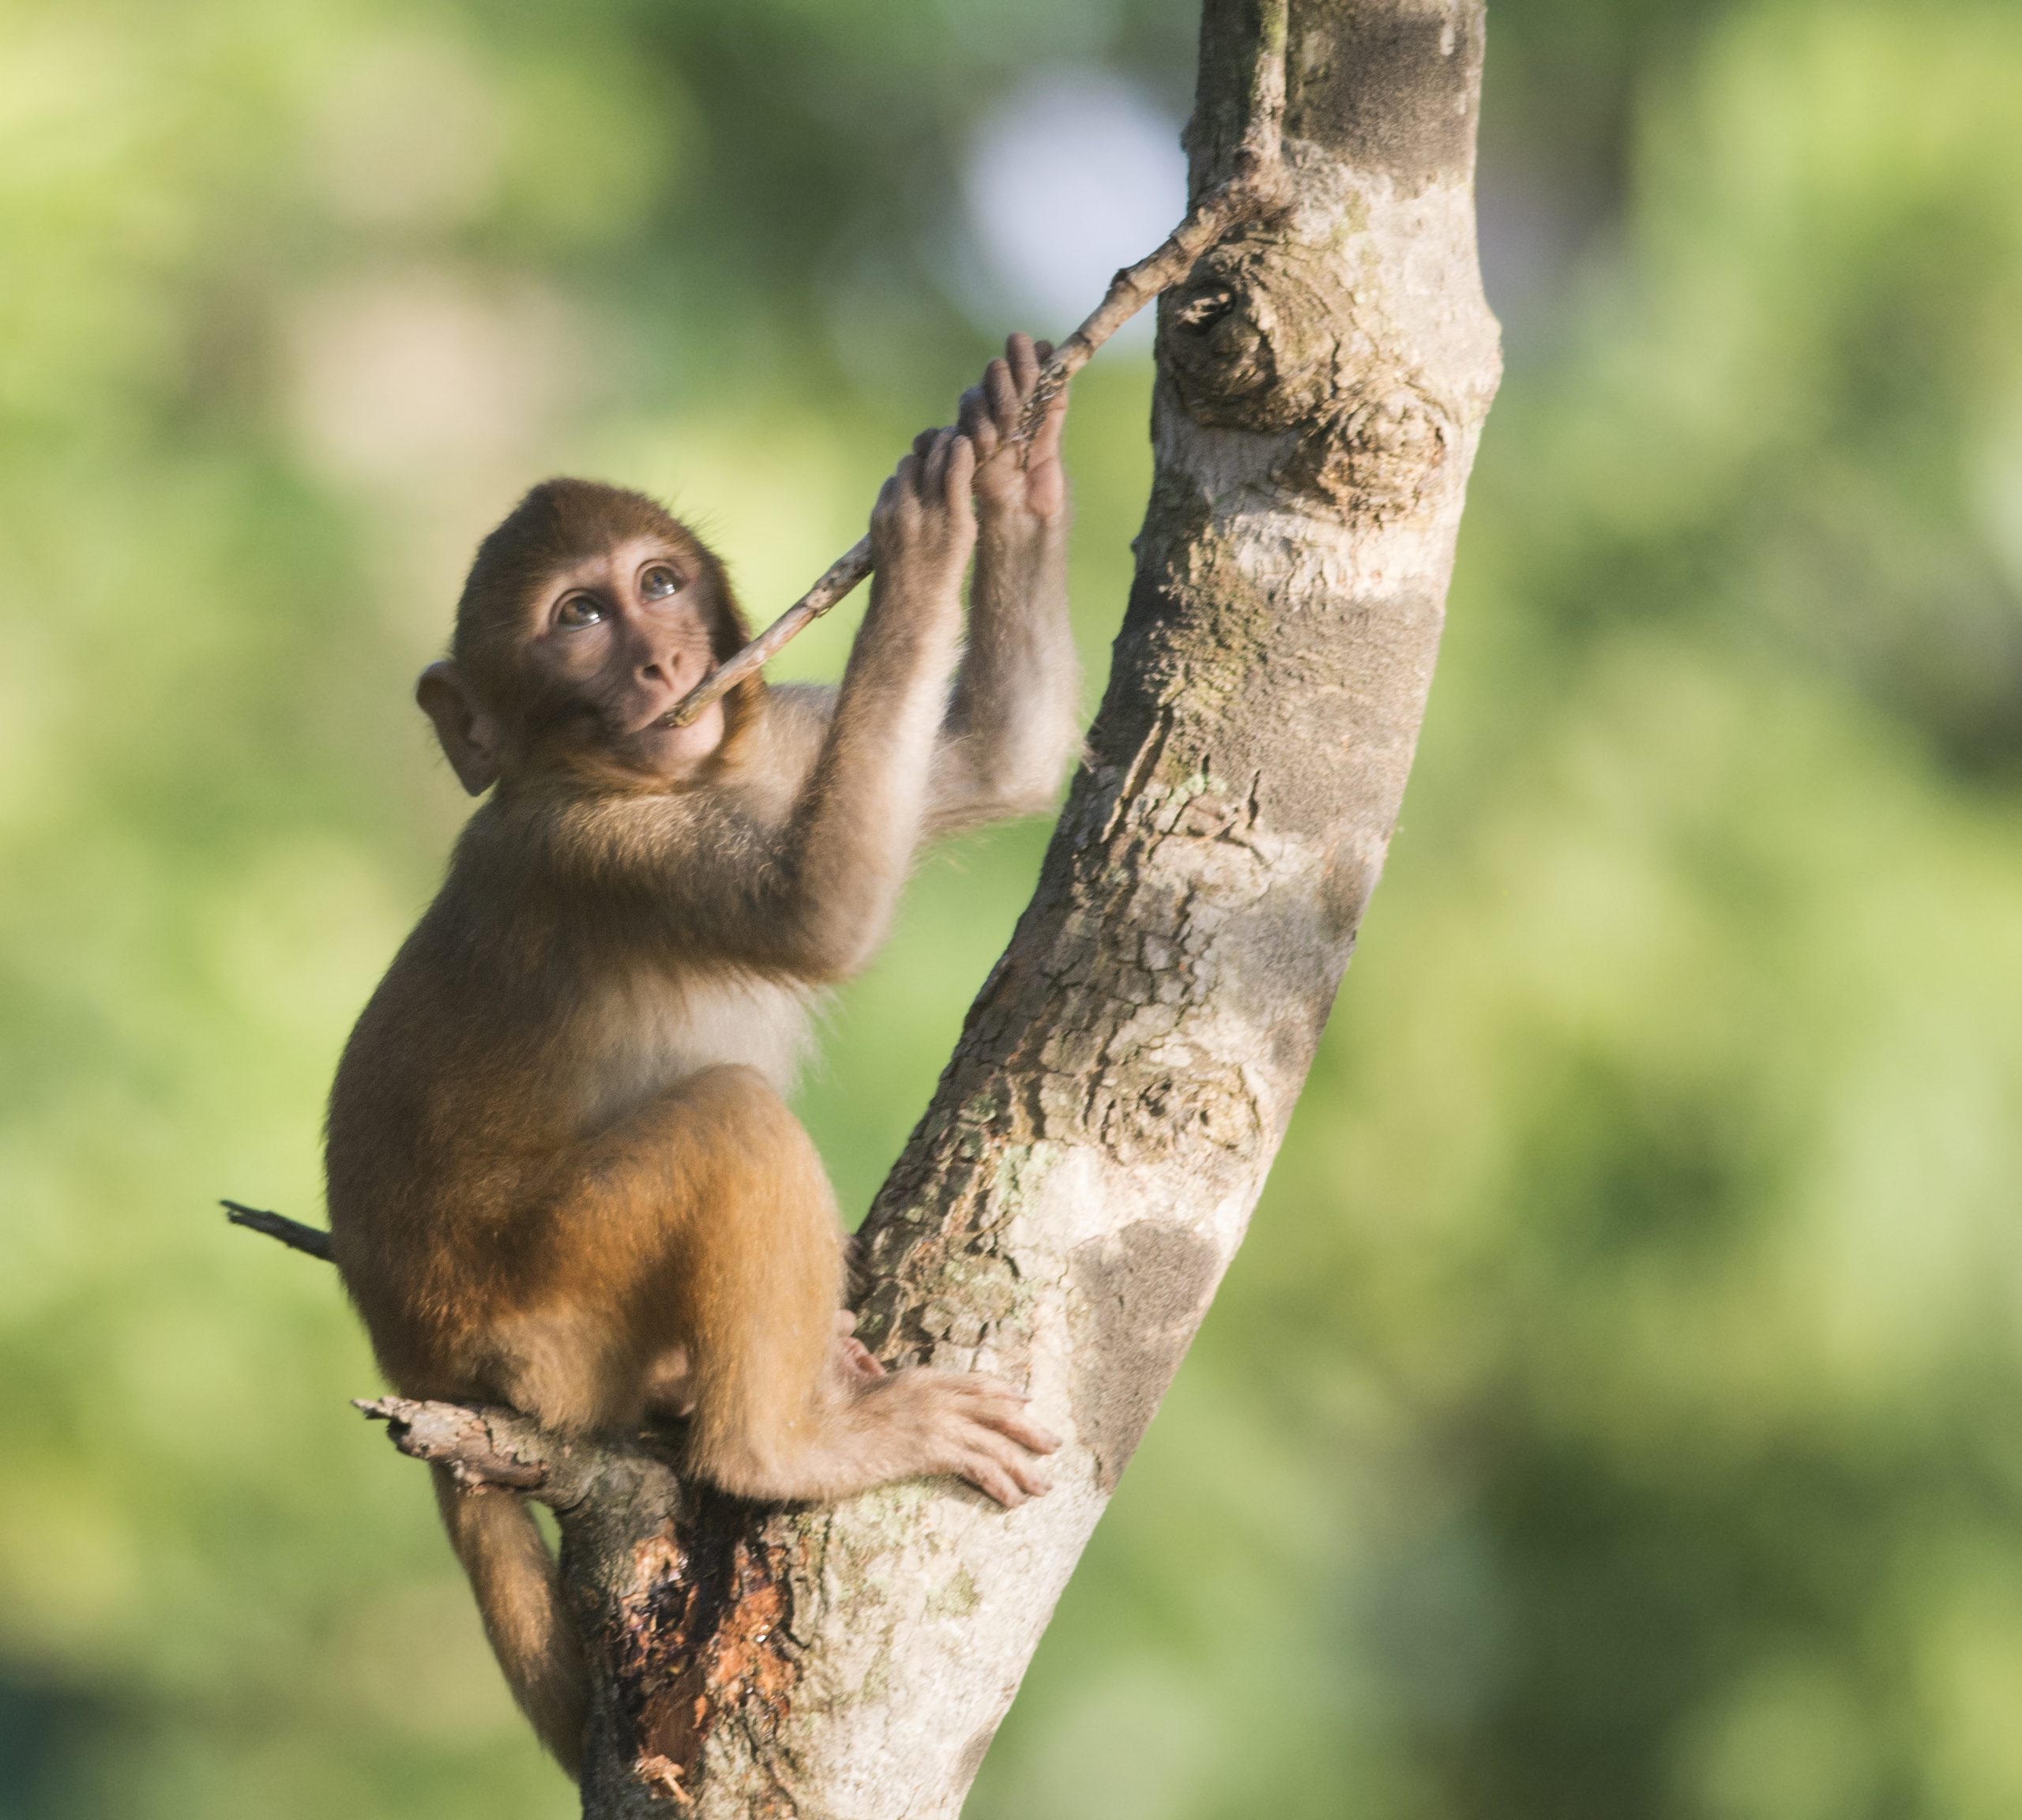 Baby Rhesus macaque